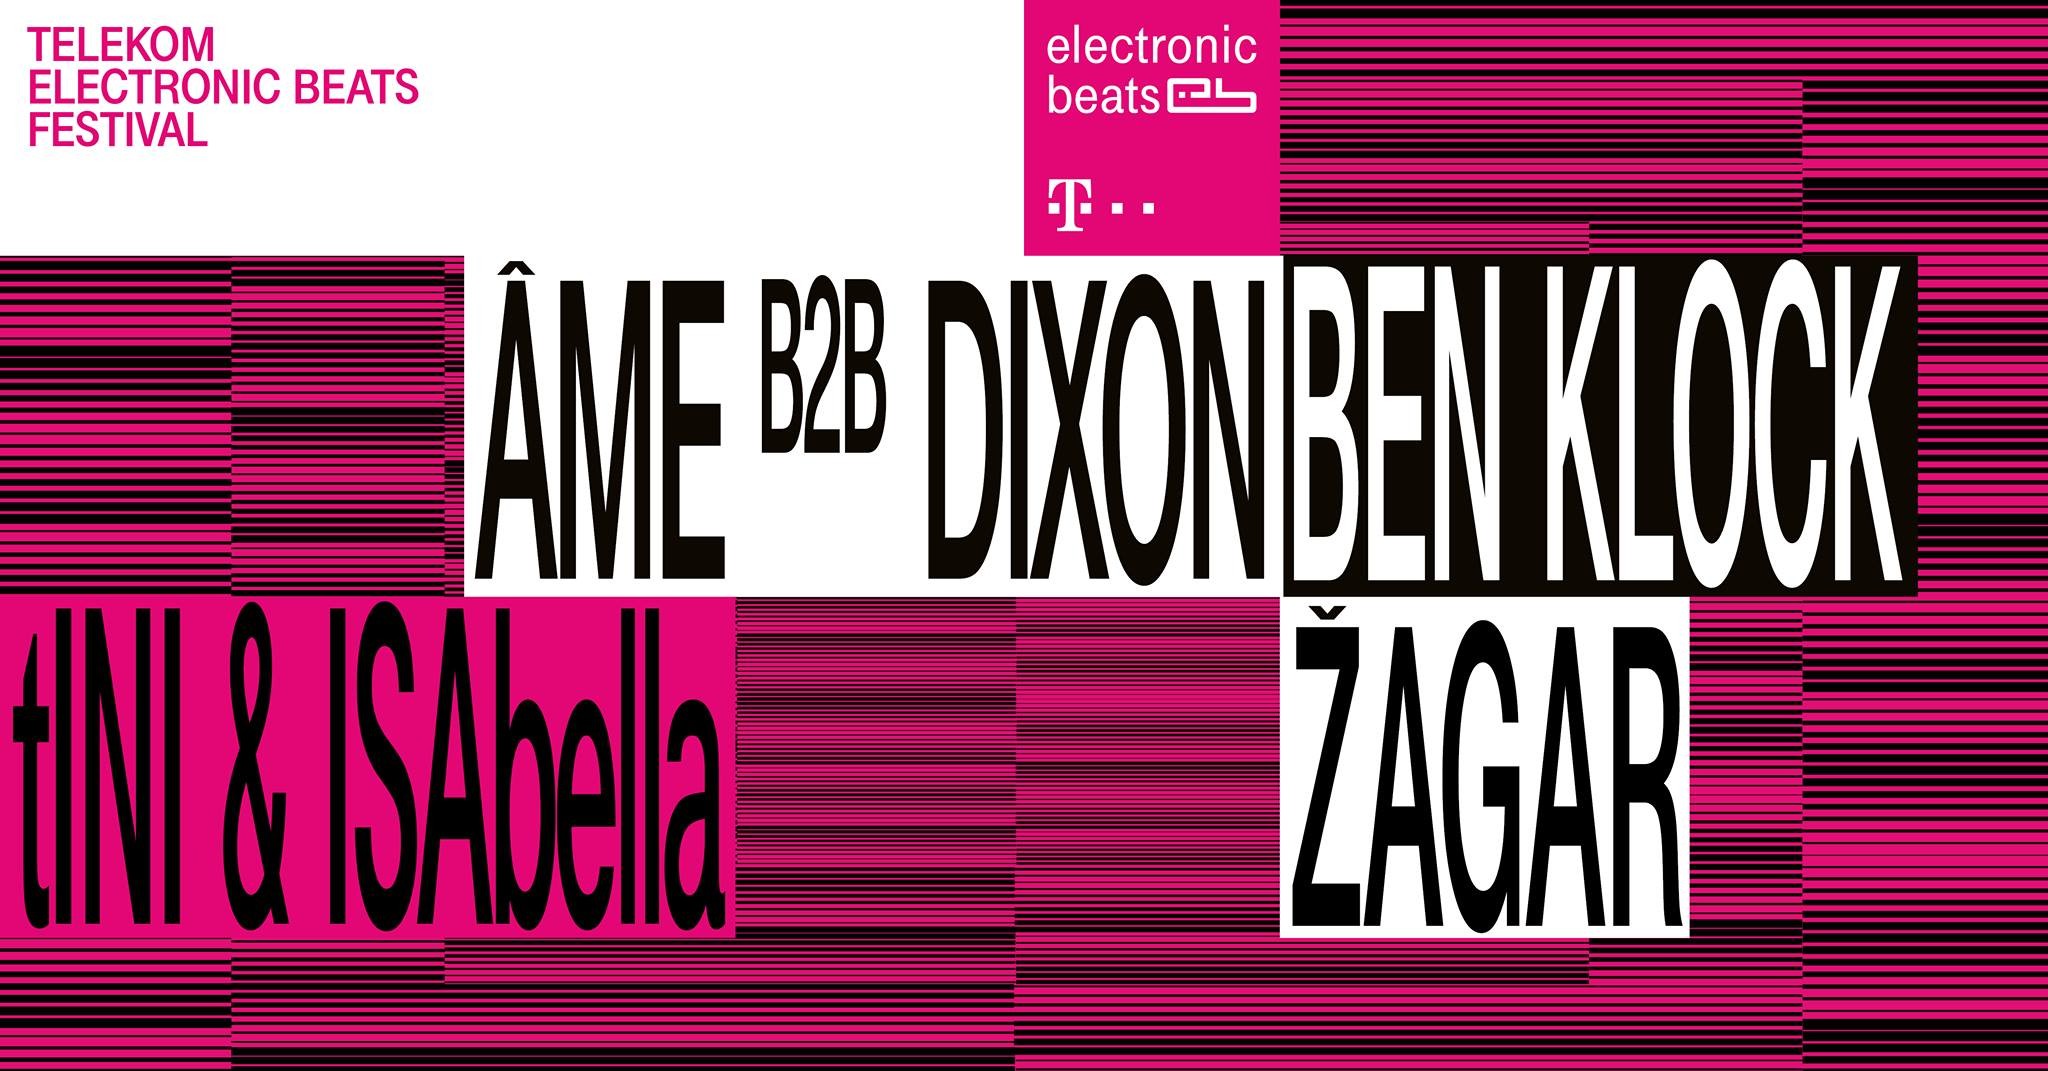 Az idei Telekom Electronic Beats zenei programja mindent fölül múl